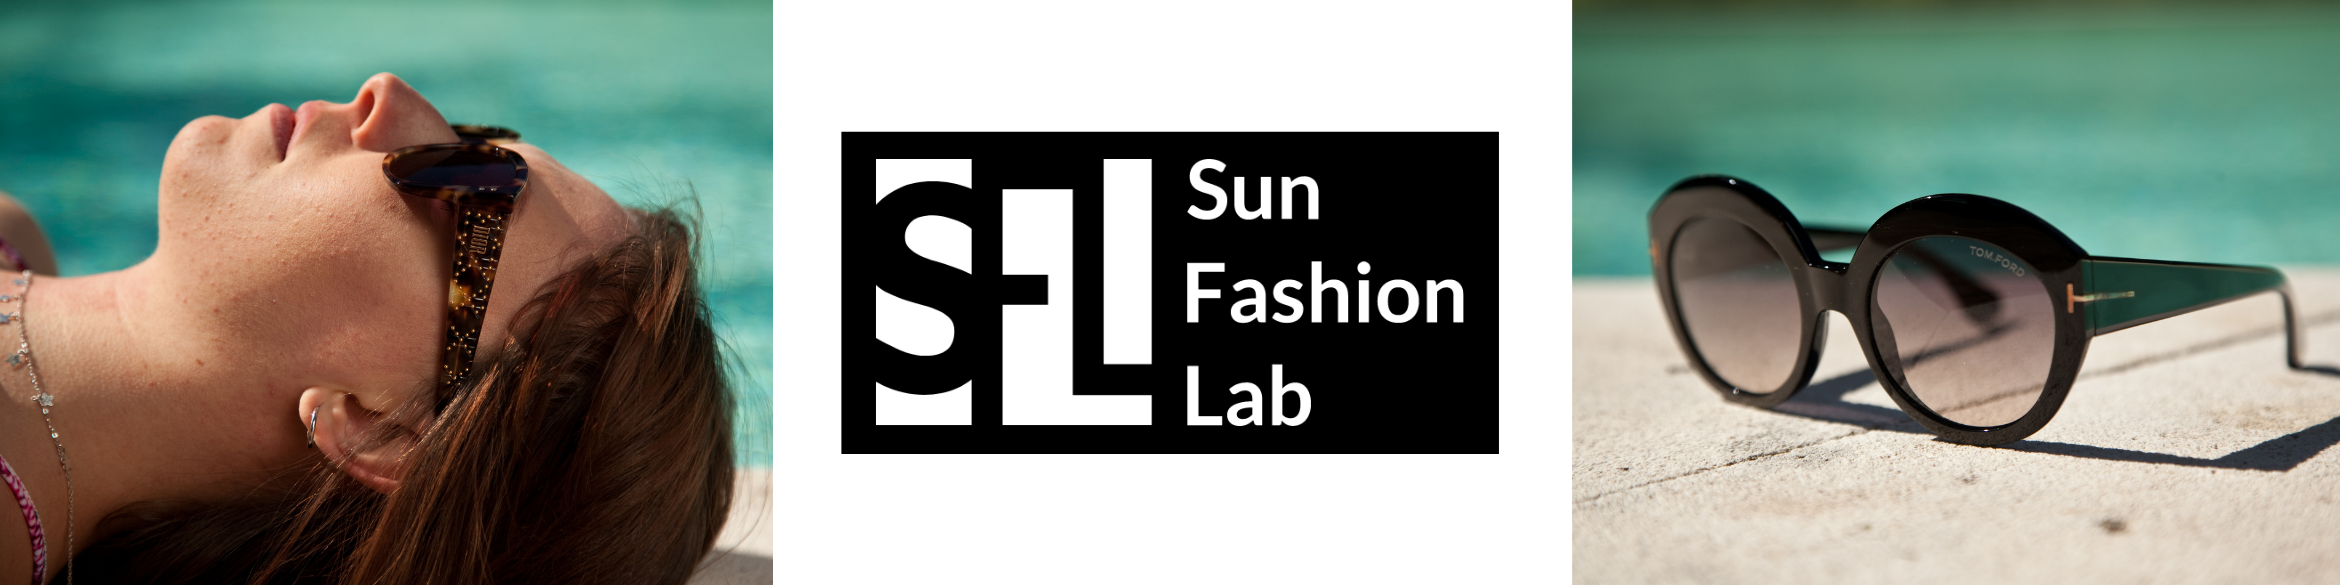 Sun Fashion Lab   